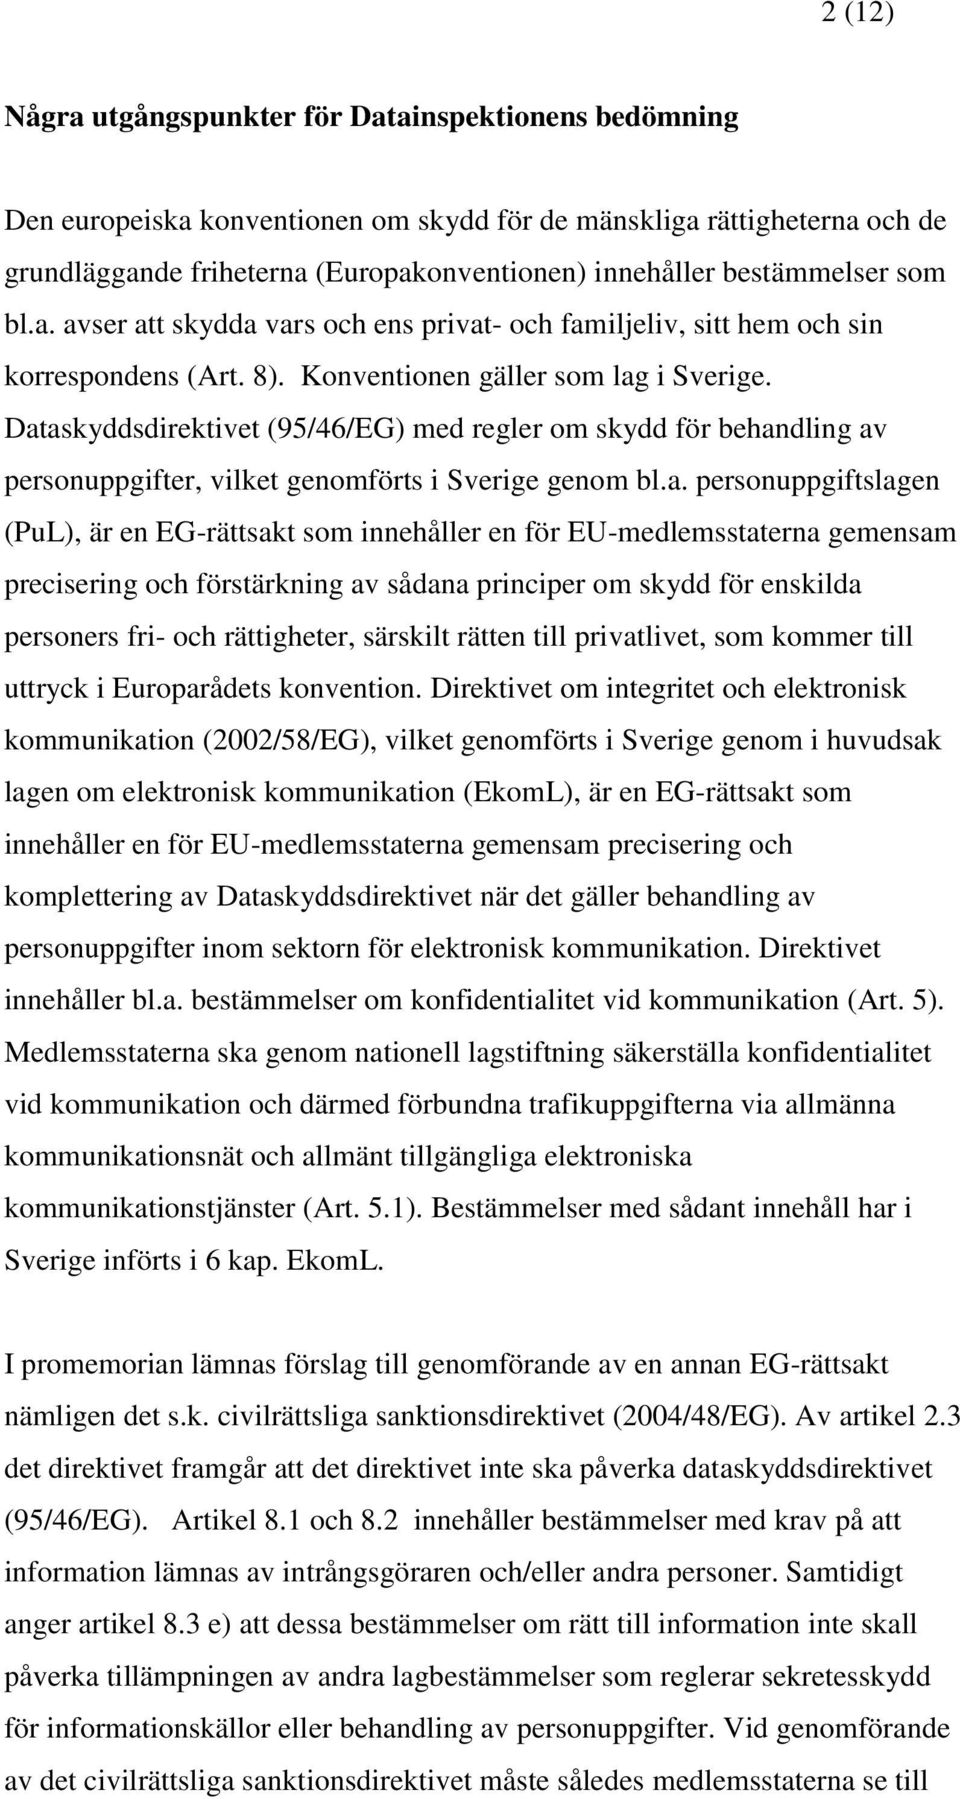 Dataskyddsdirektivet (95/46/EG) med regler om skydd för behandling av personuppgifter, vilket genomförts i Sverige genom bl.a. personuppgiftslagen (PuL), är en EG-rättsakt som innehåller en för